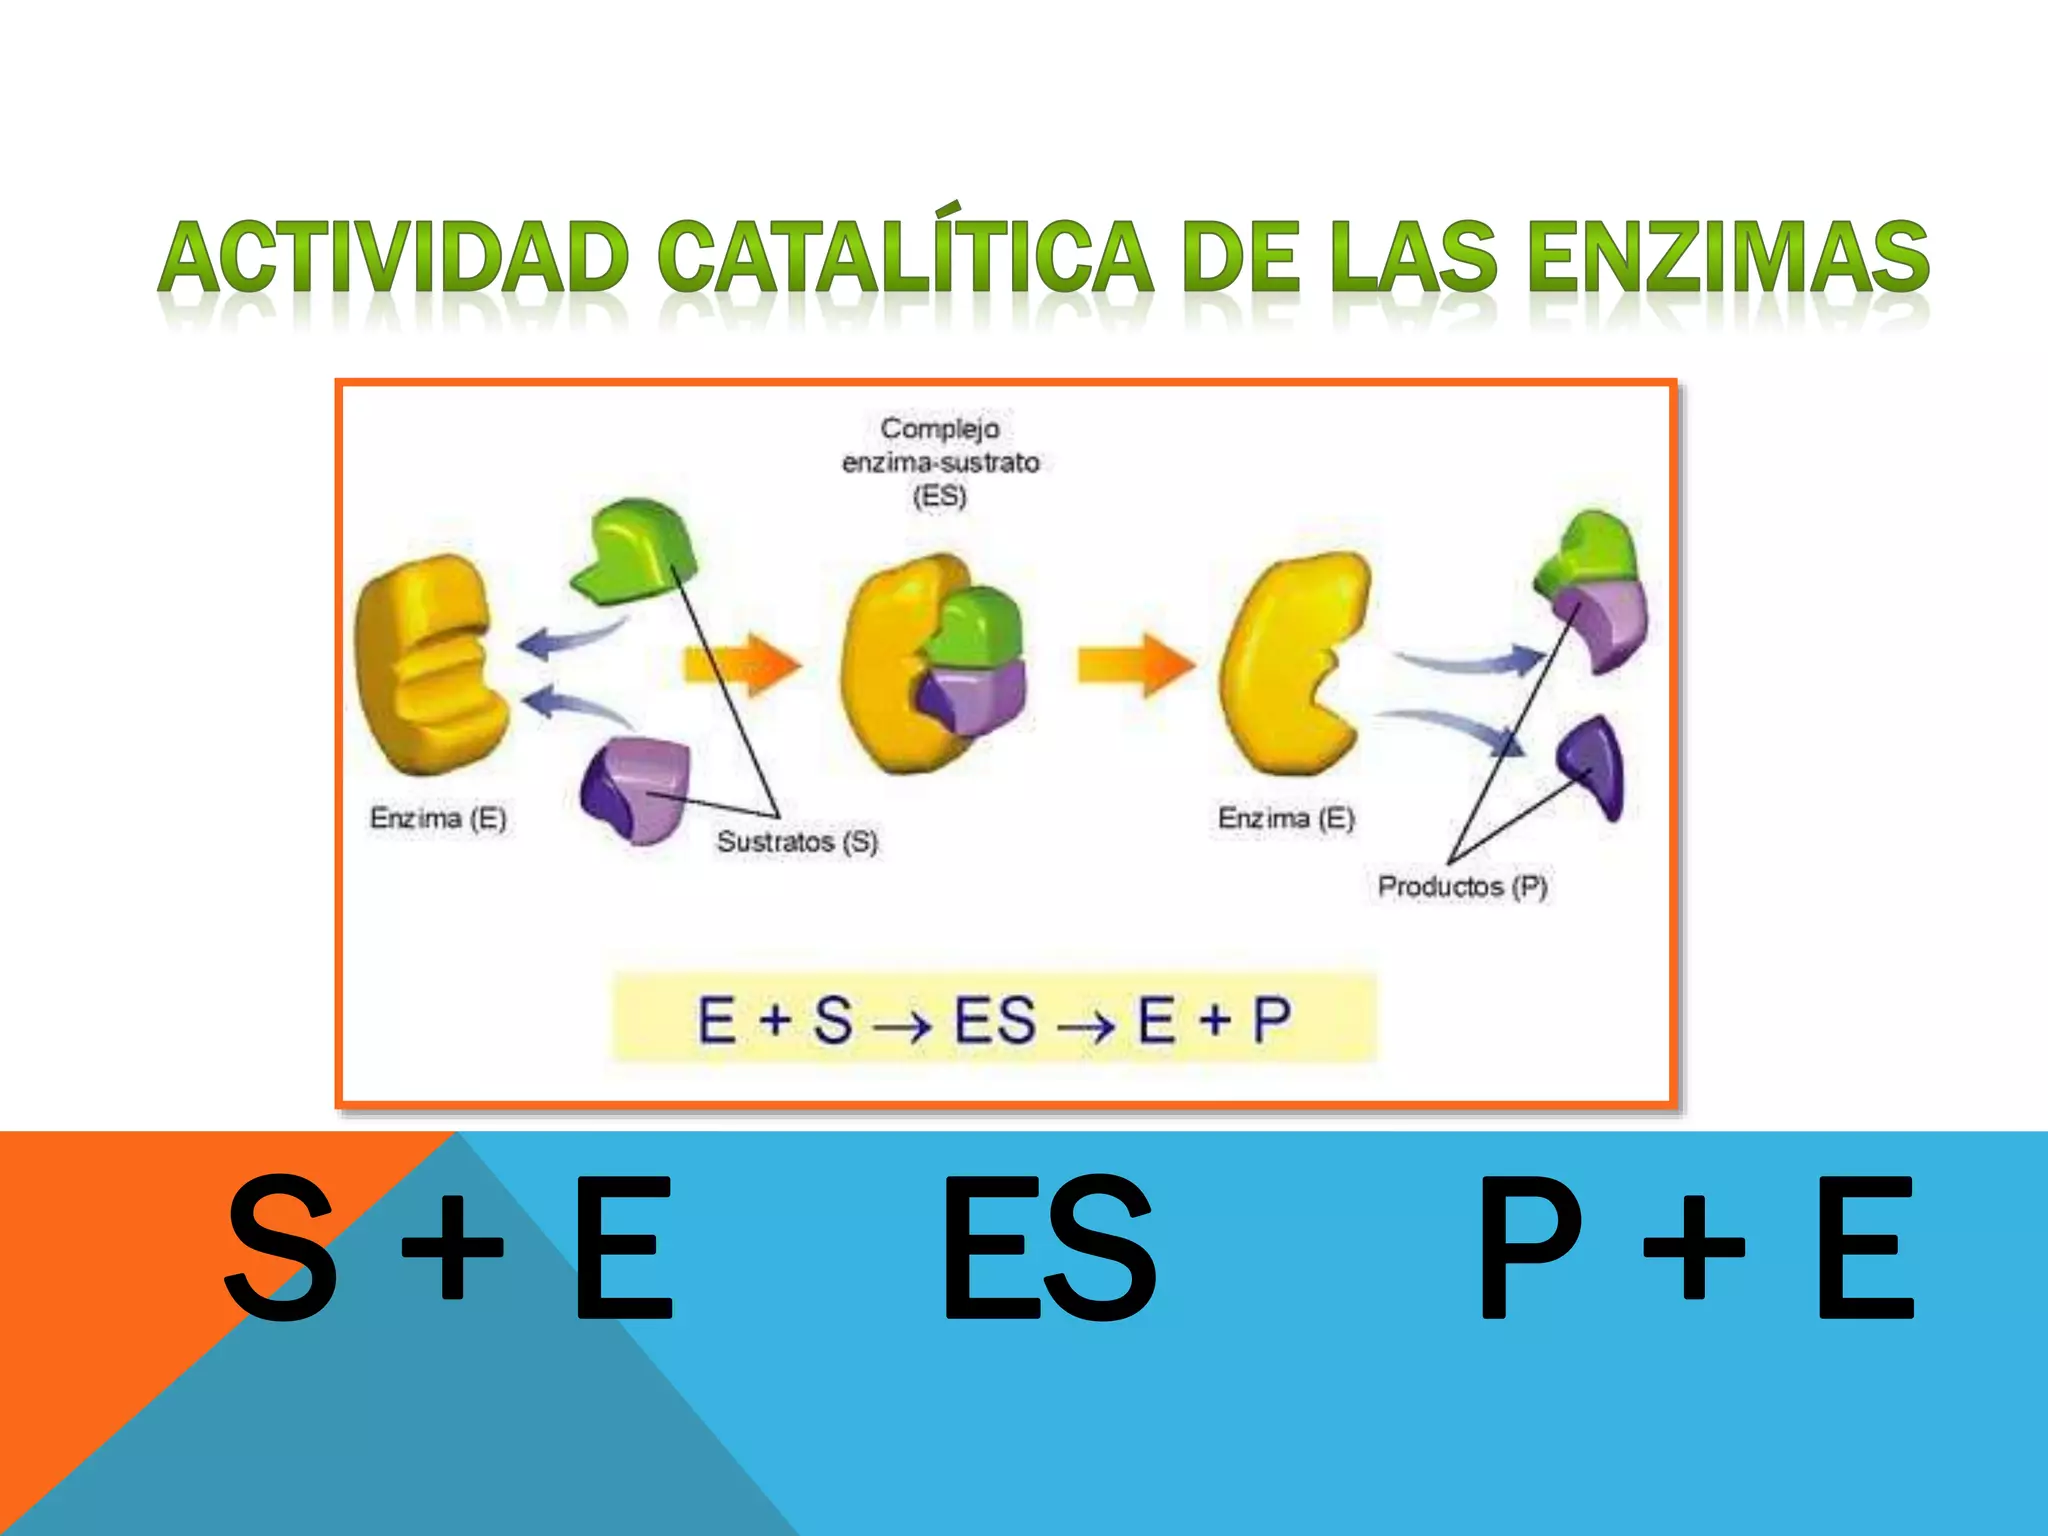 Modelos de accion de las enzimas